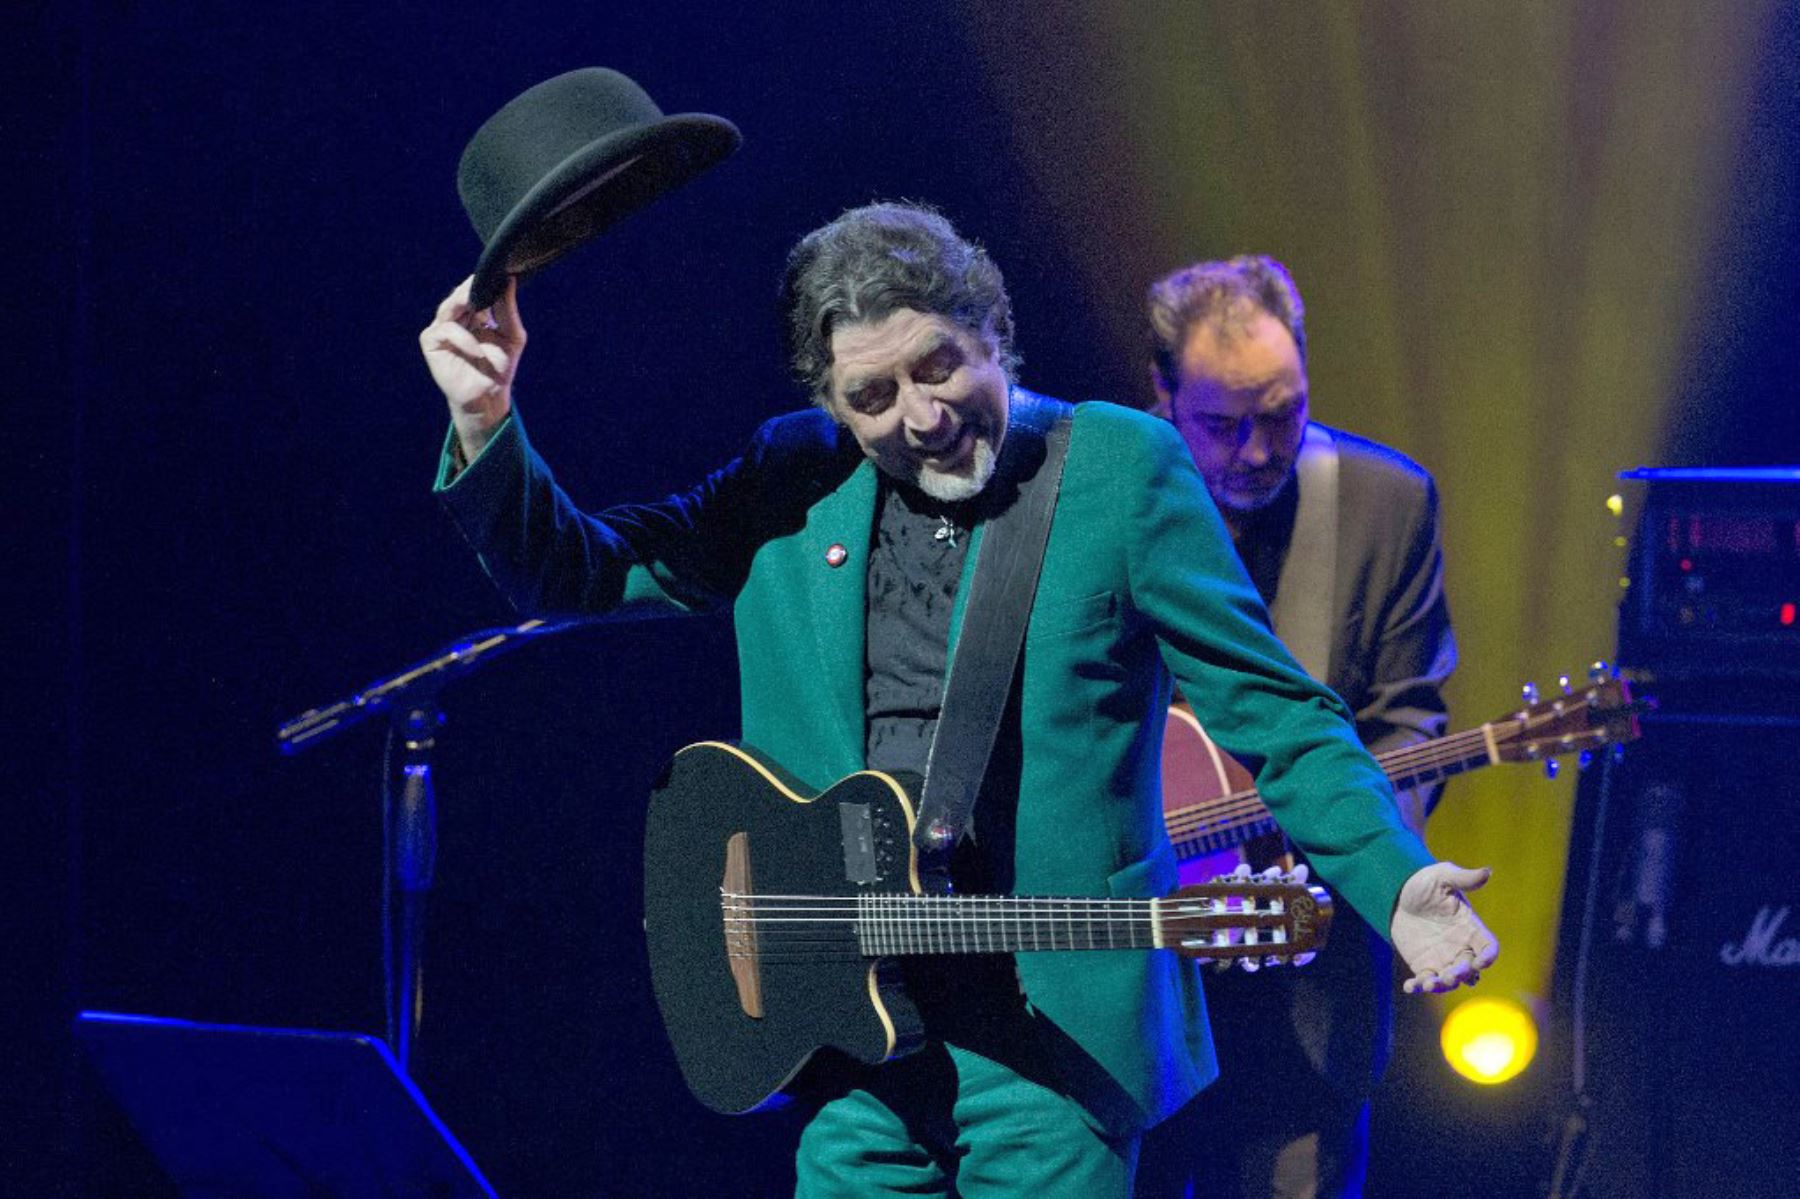 El cantautor español Joaquín Sabina presenta su espectáculo "500 noches para una crisis" en Montevideo el 7 de octubre de 2014. Foto: AFP